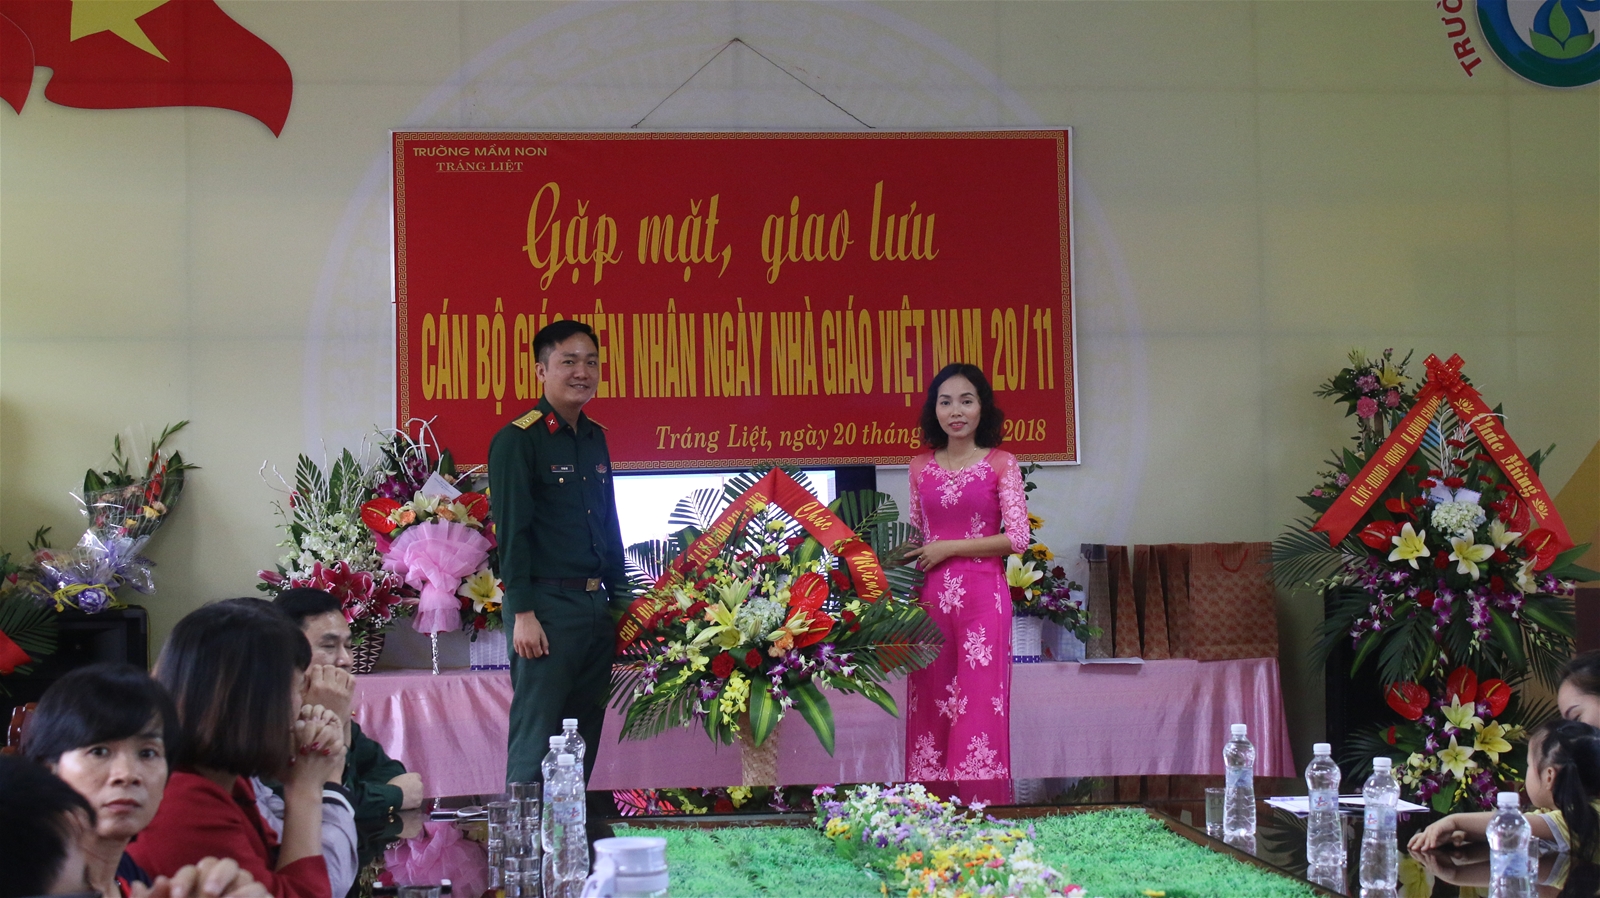 Đại úy Vũ Từ Hải - đại diện đại đội chỉ huy Lữ đoàn 214 tặng hoa chúc mừng